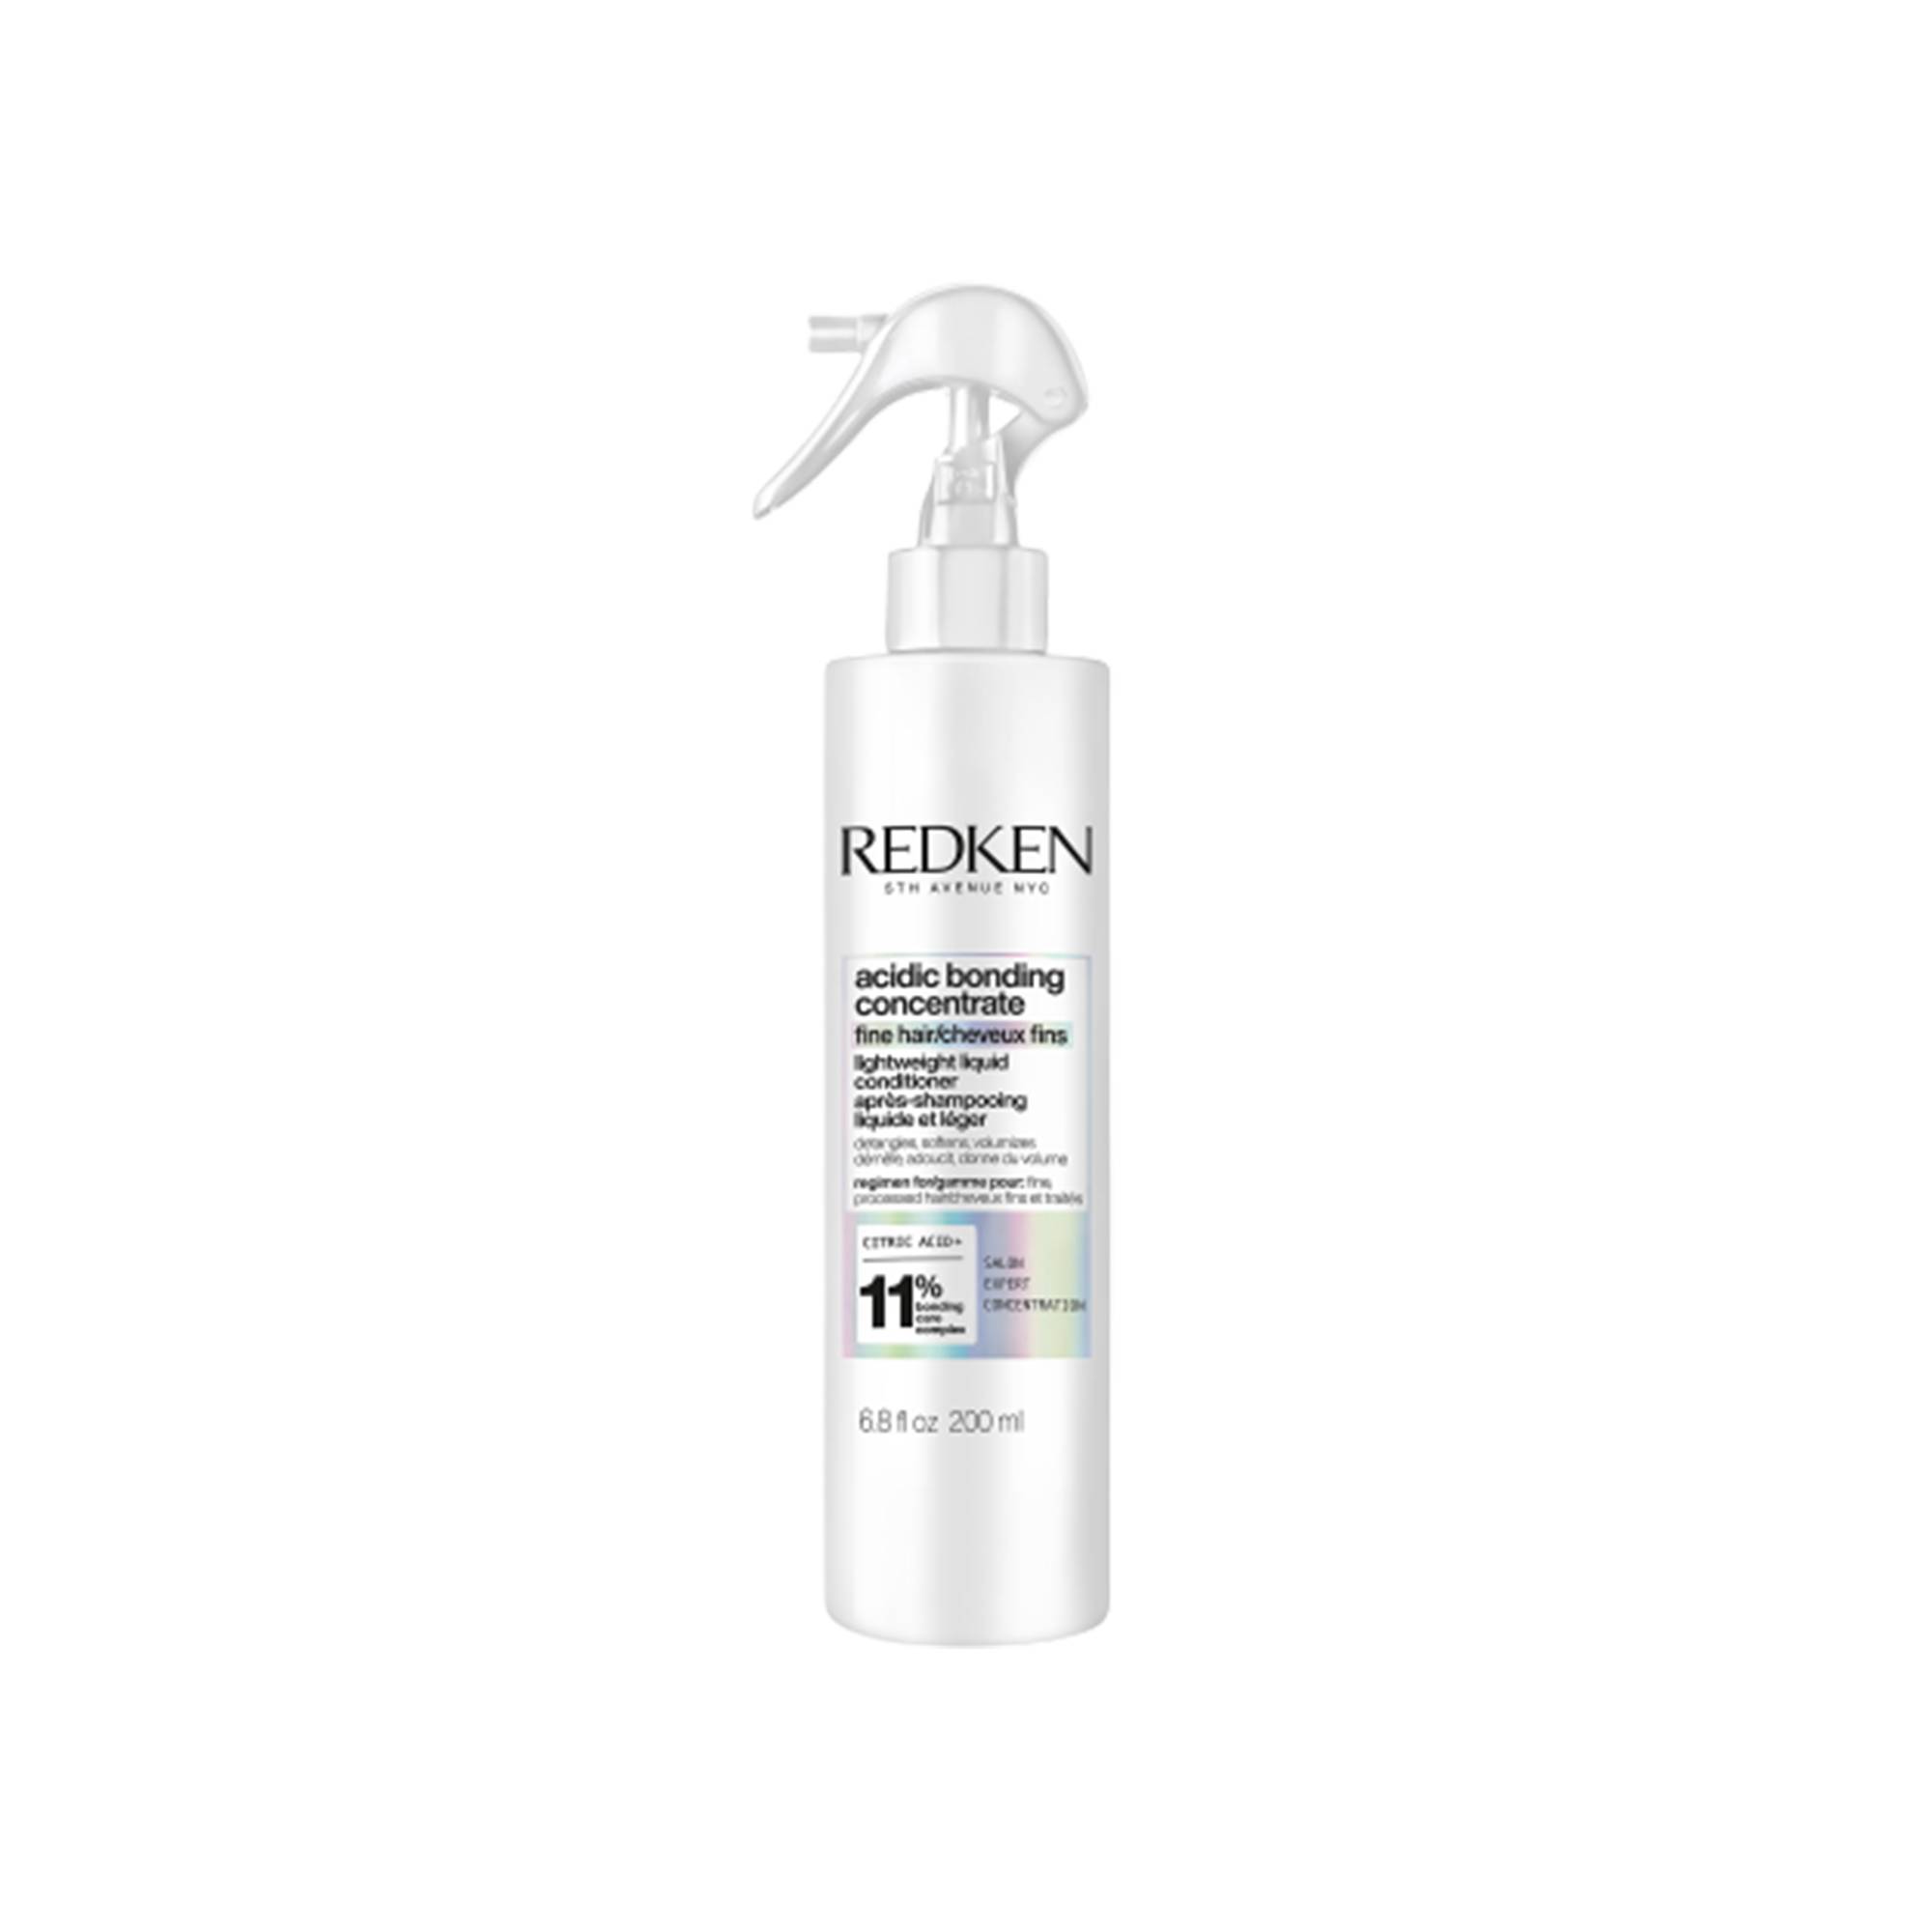 Après-shampoing ultra léger Acidic Bonding Concentrate de la marque Redken Contenance 190ml - 1